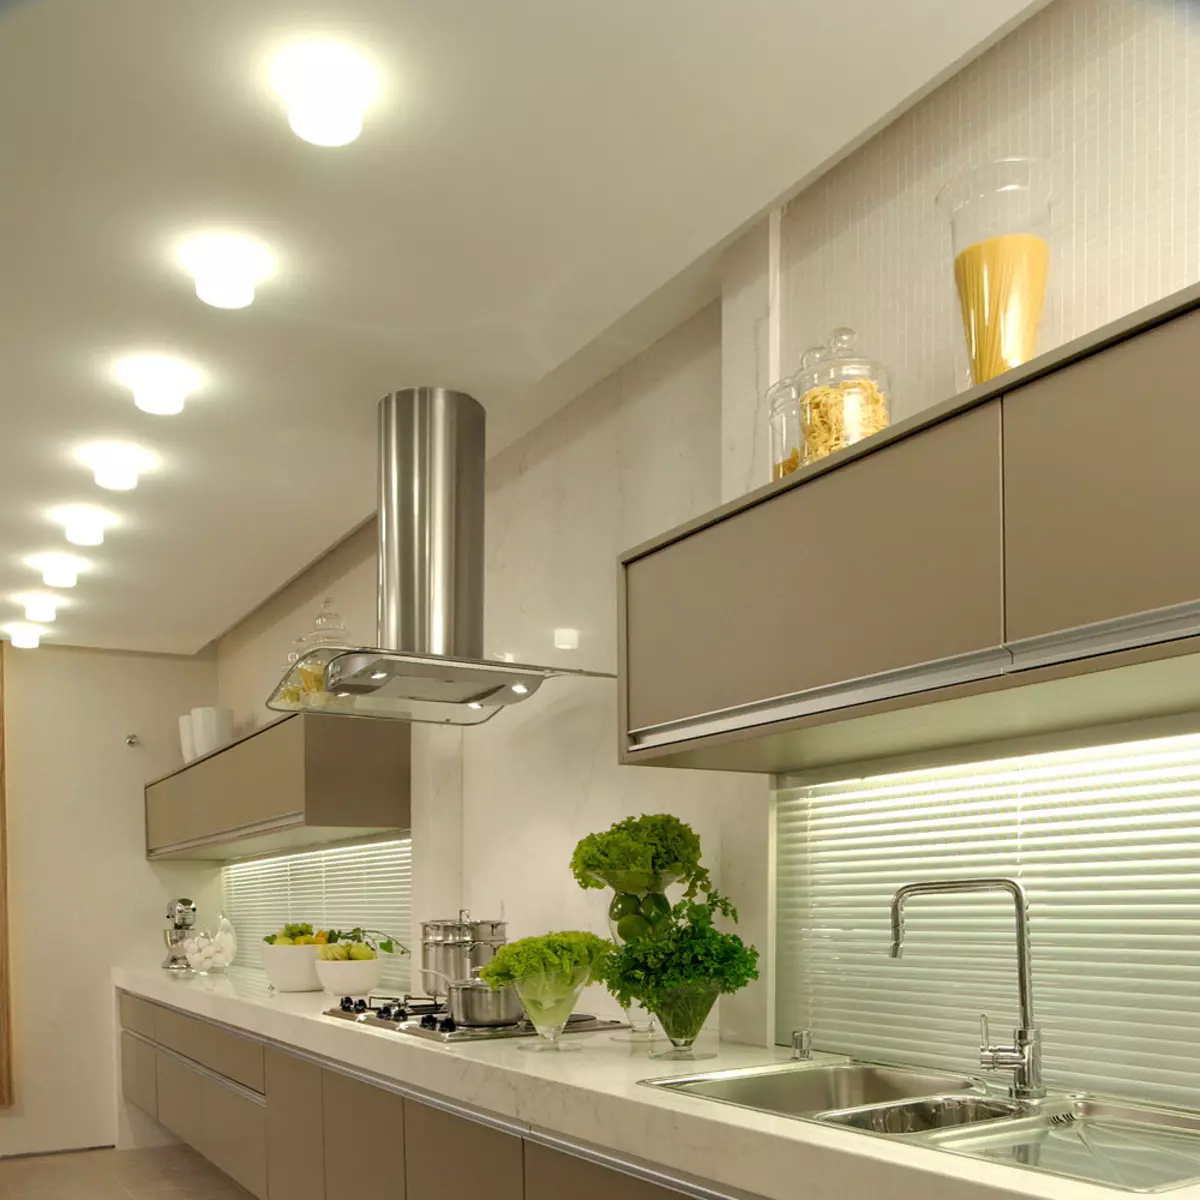 Խոհանոցային լամպեր (74 լուսանկար). Խոհանոցային Sconce եւ պատի վրա տեղադրված սենսորային լամպեր, գլխավերեւում եւ հետեւի լամպեր եւ առաստաղներ, այլ տարբերակներ 21003_21